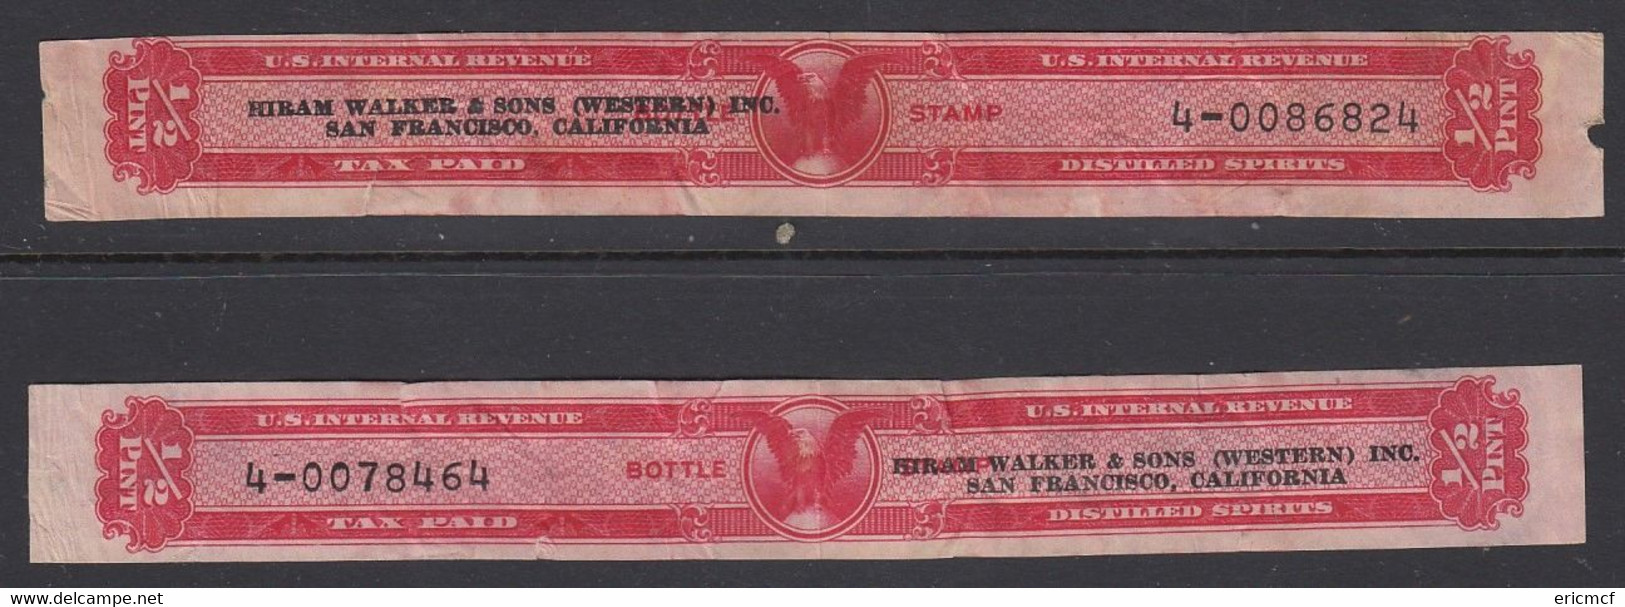 USA Distilled Spirits 1/2 Pint Revenue Stamp X2 Hiram Walker - Steuermarken